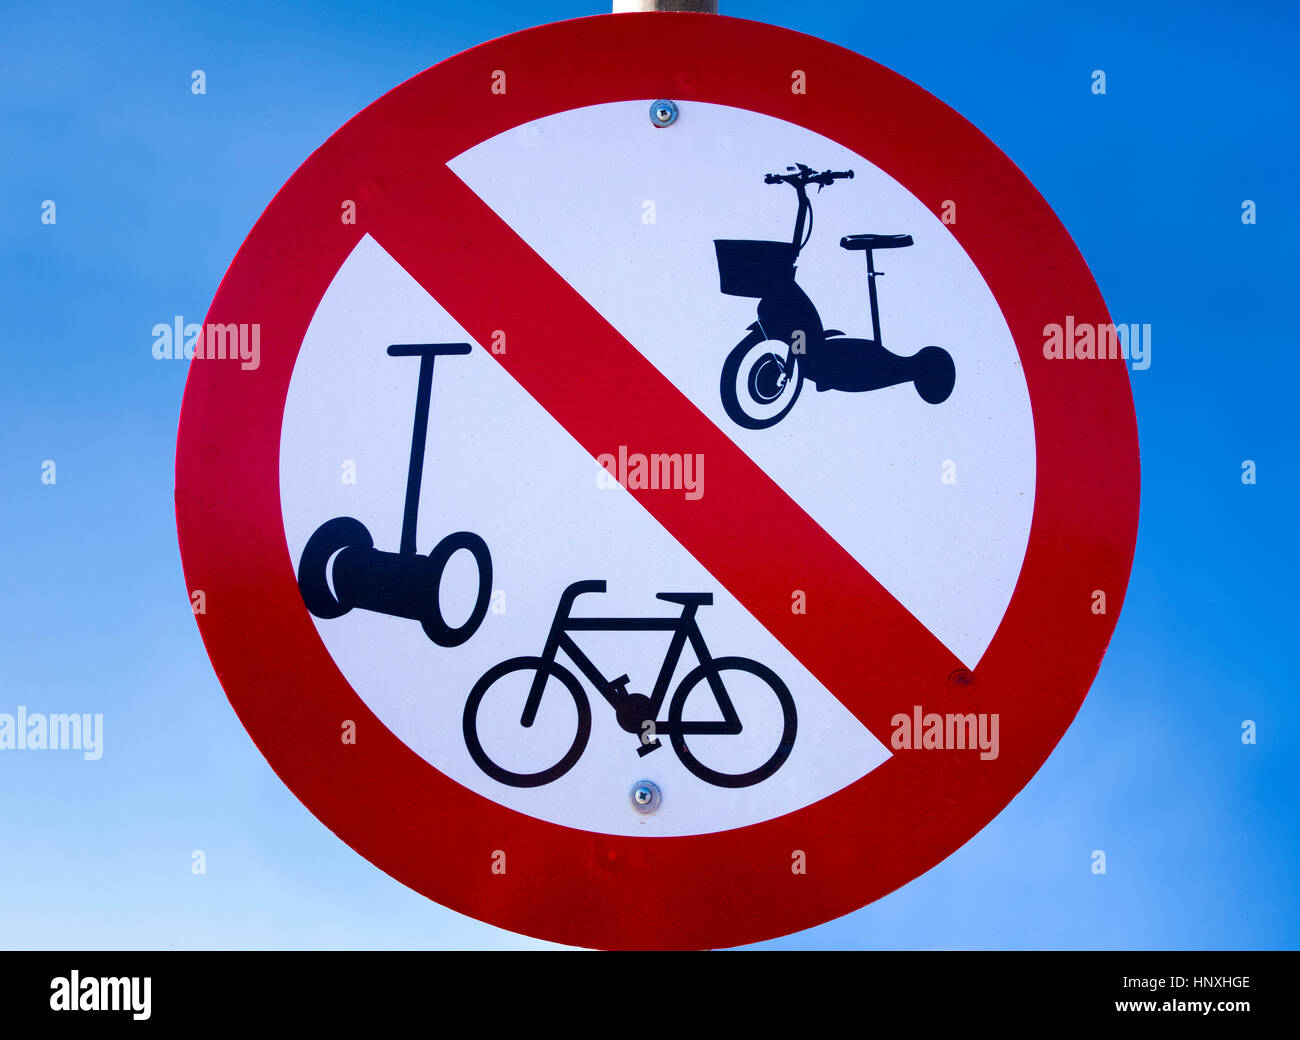 Straße Verbotszeichen - keine Fahrräder, keine Segway und andere motorisierte Fahrzeuge - gegen blauen Himmel. Stockfoto